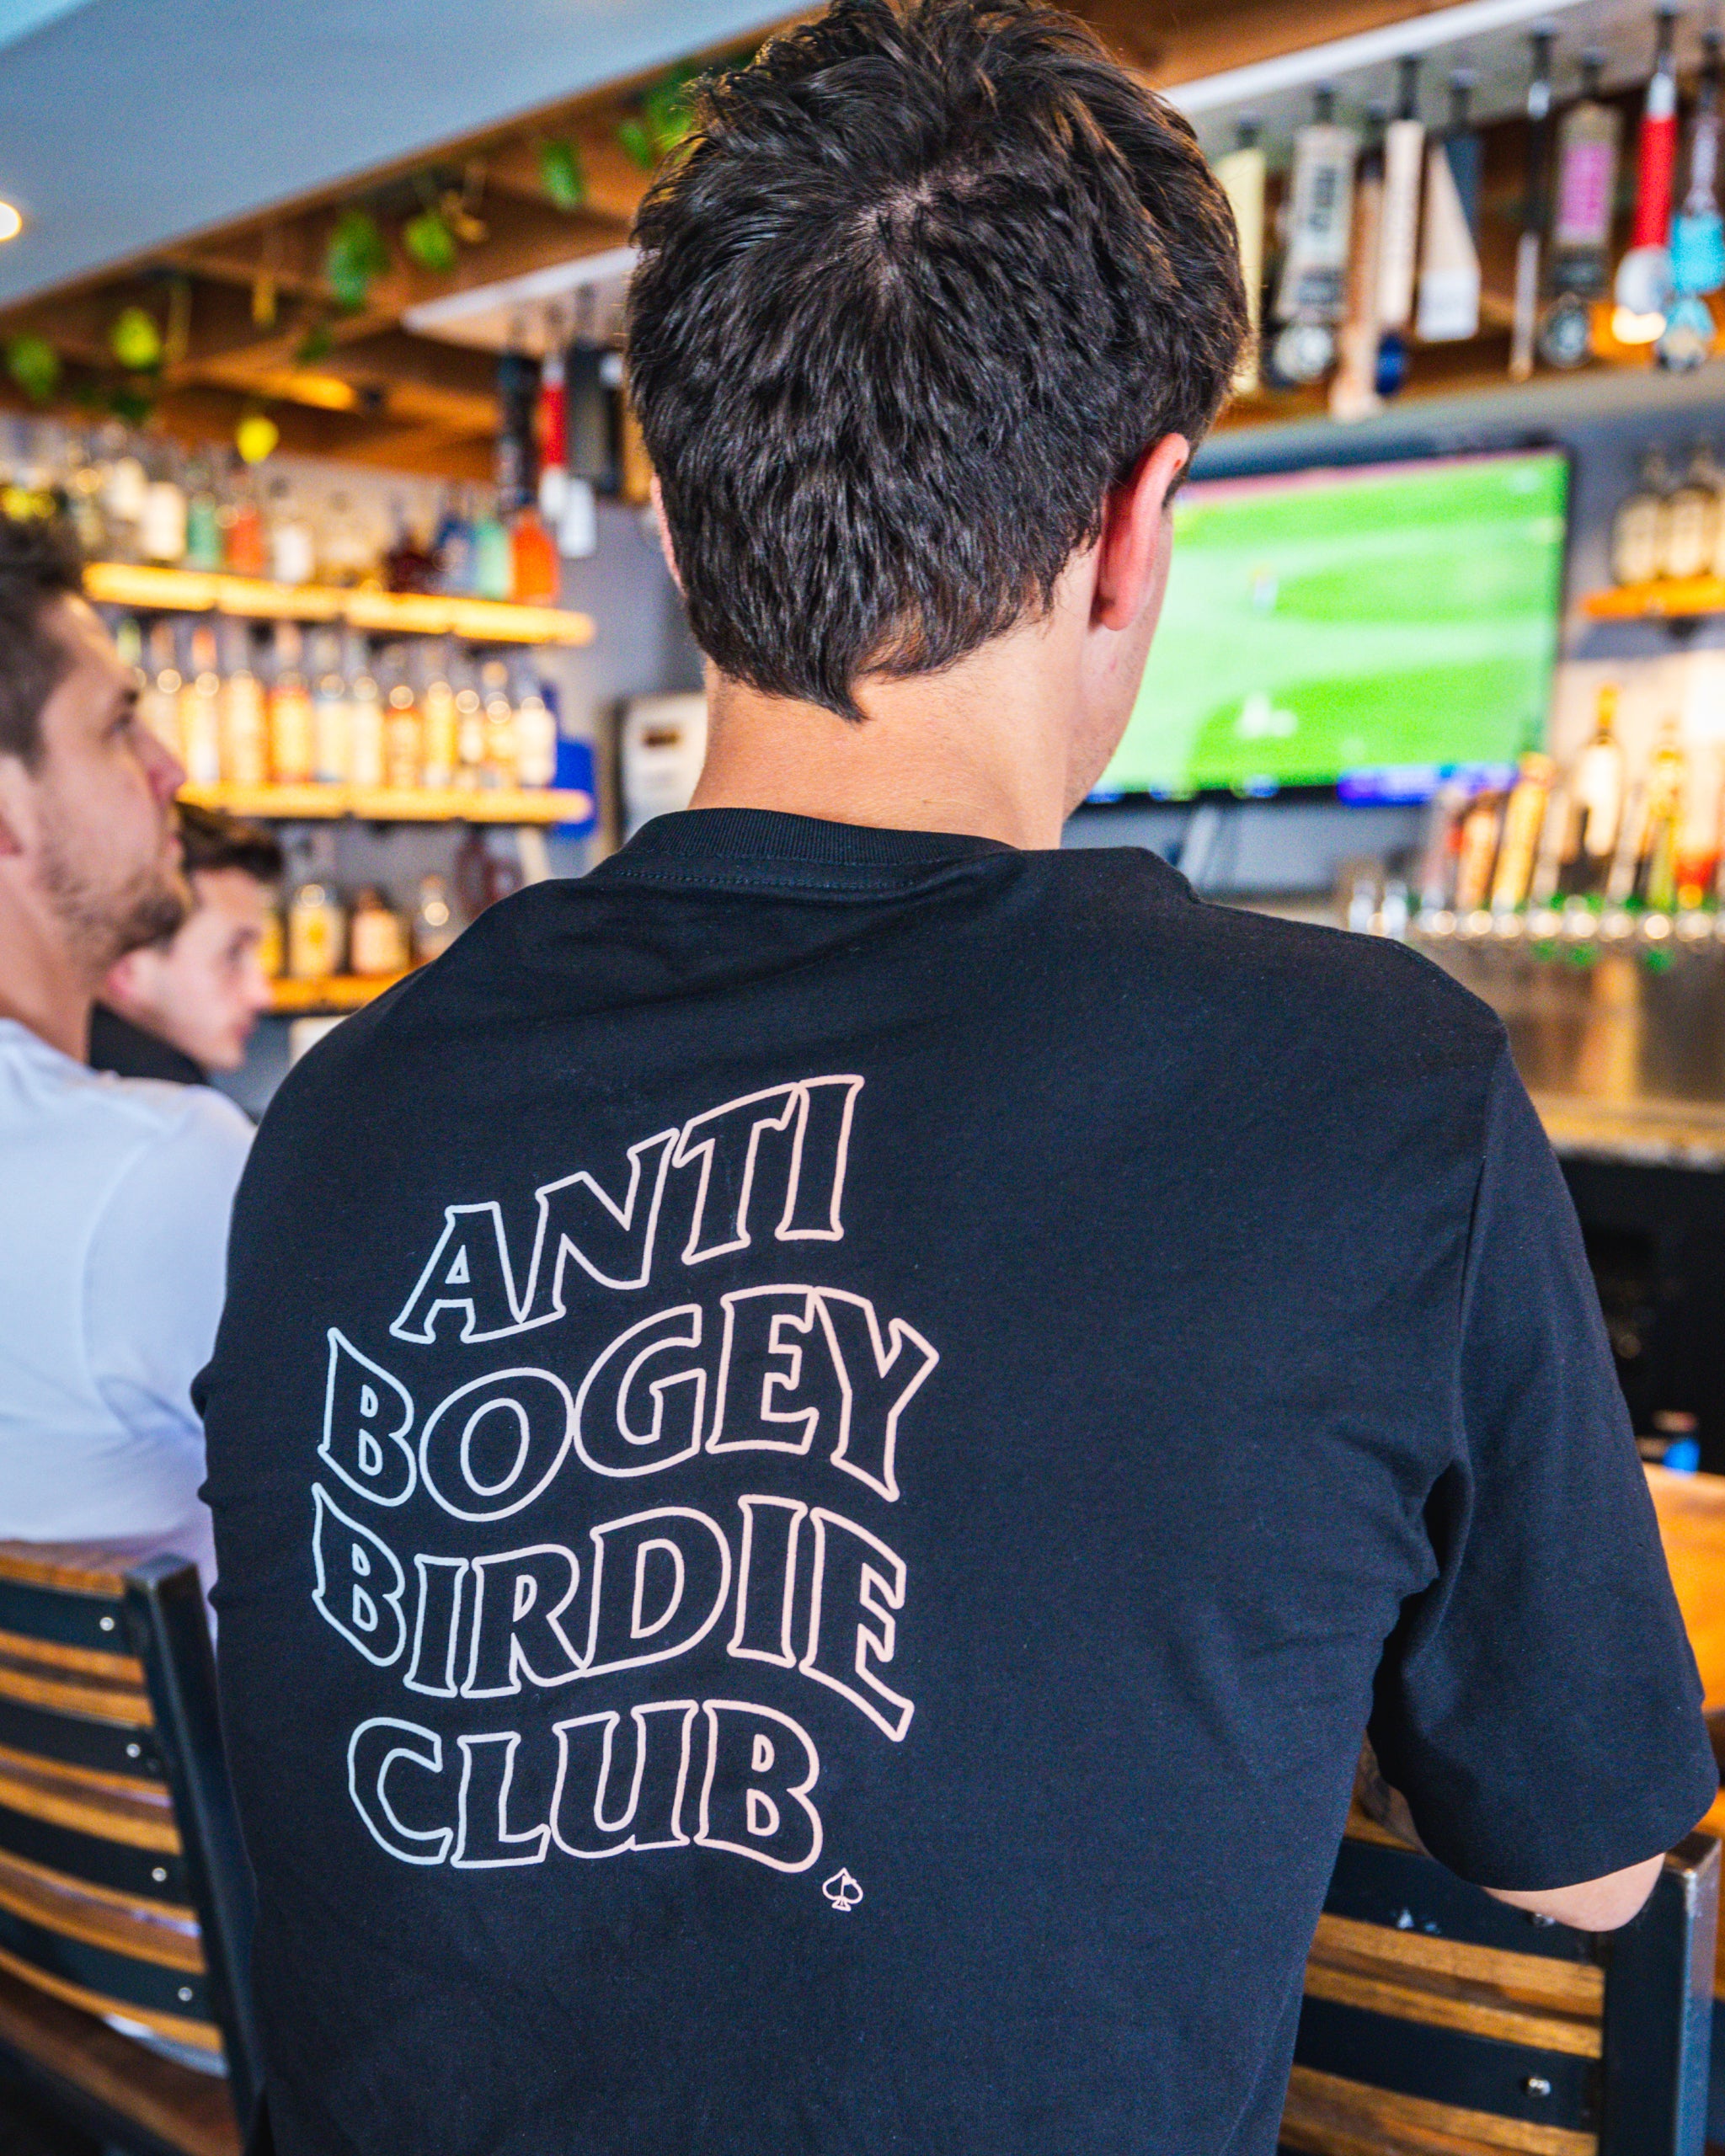 Anti Bogey Birdie Club - Tee